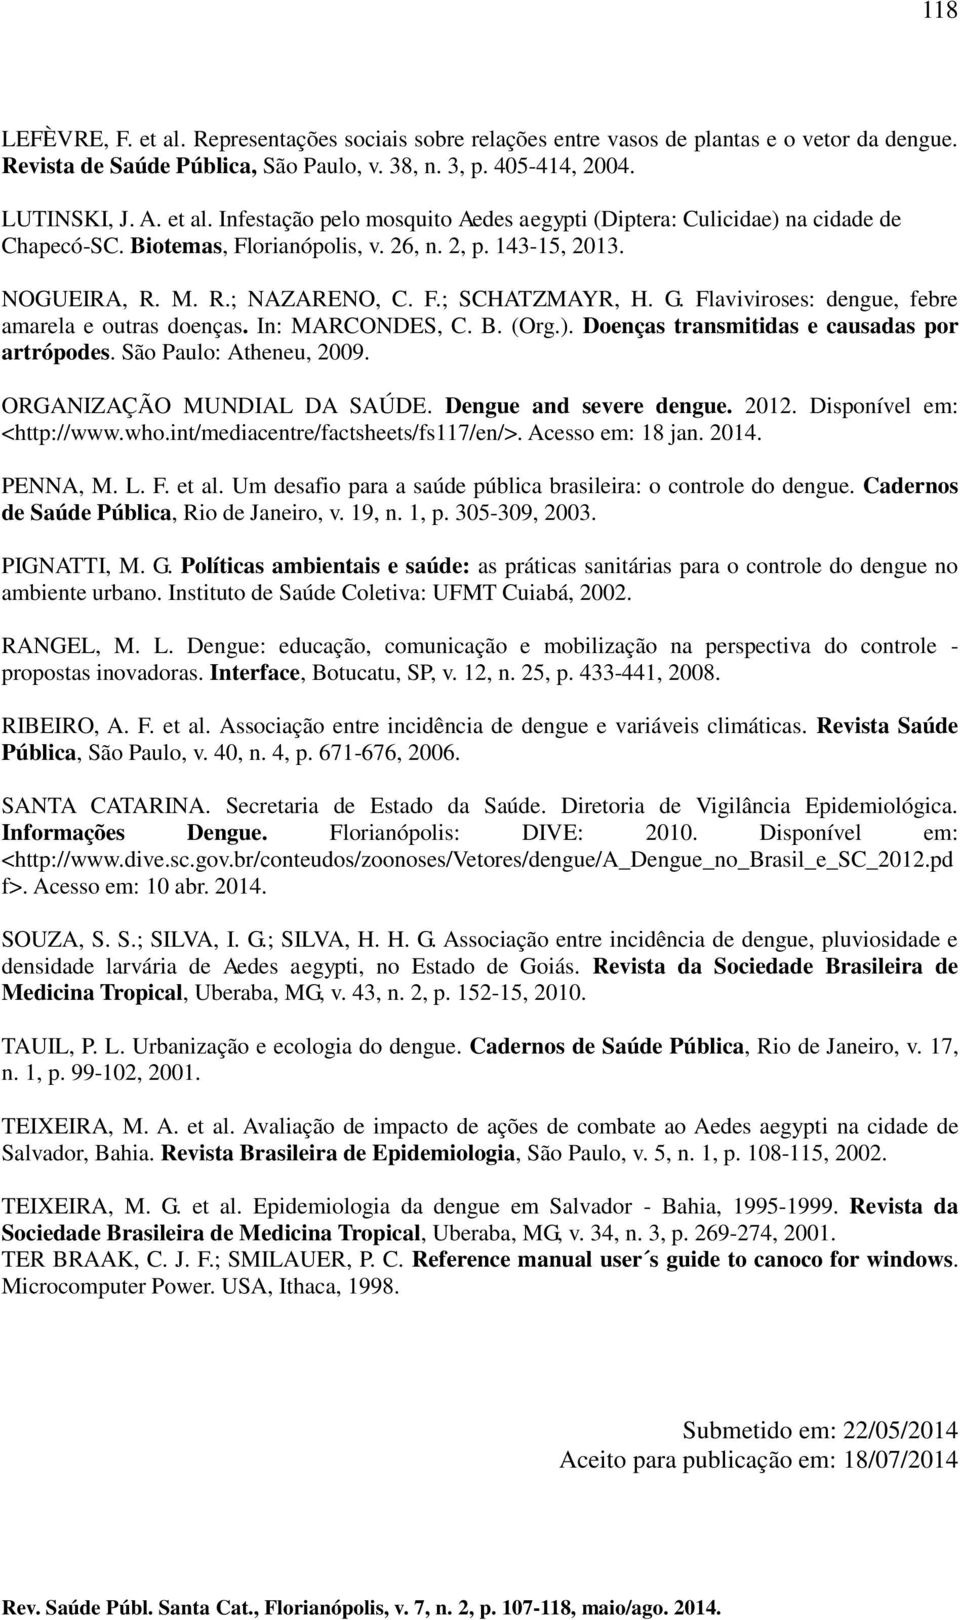 Doenças transmitidas e causadas por artrópodes. São Paulo: Atheneu, 2009. ORGANIZAÇÃO MUNDIAL DA SAÚDE. Dengue and severe dengue. 2012. Disponível em: <http://www.who.